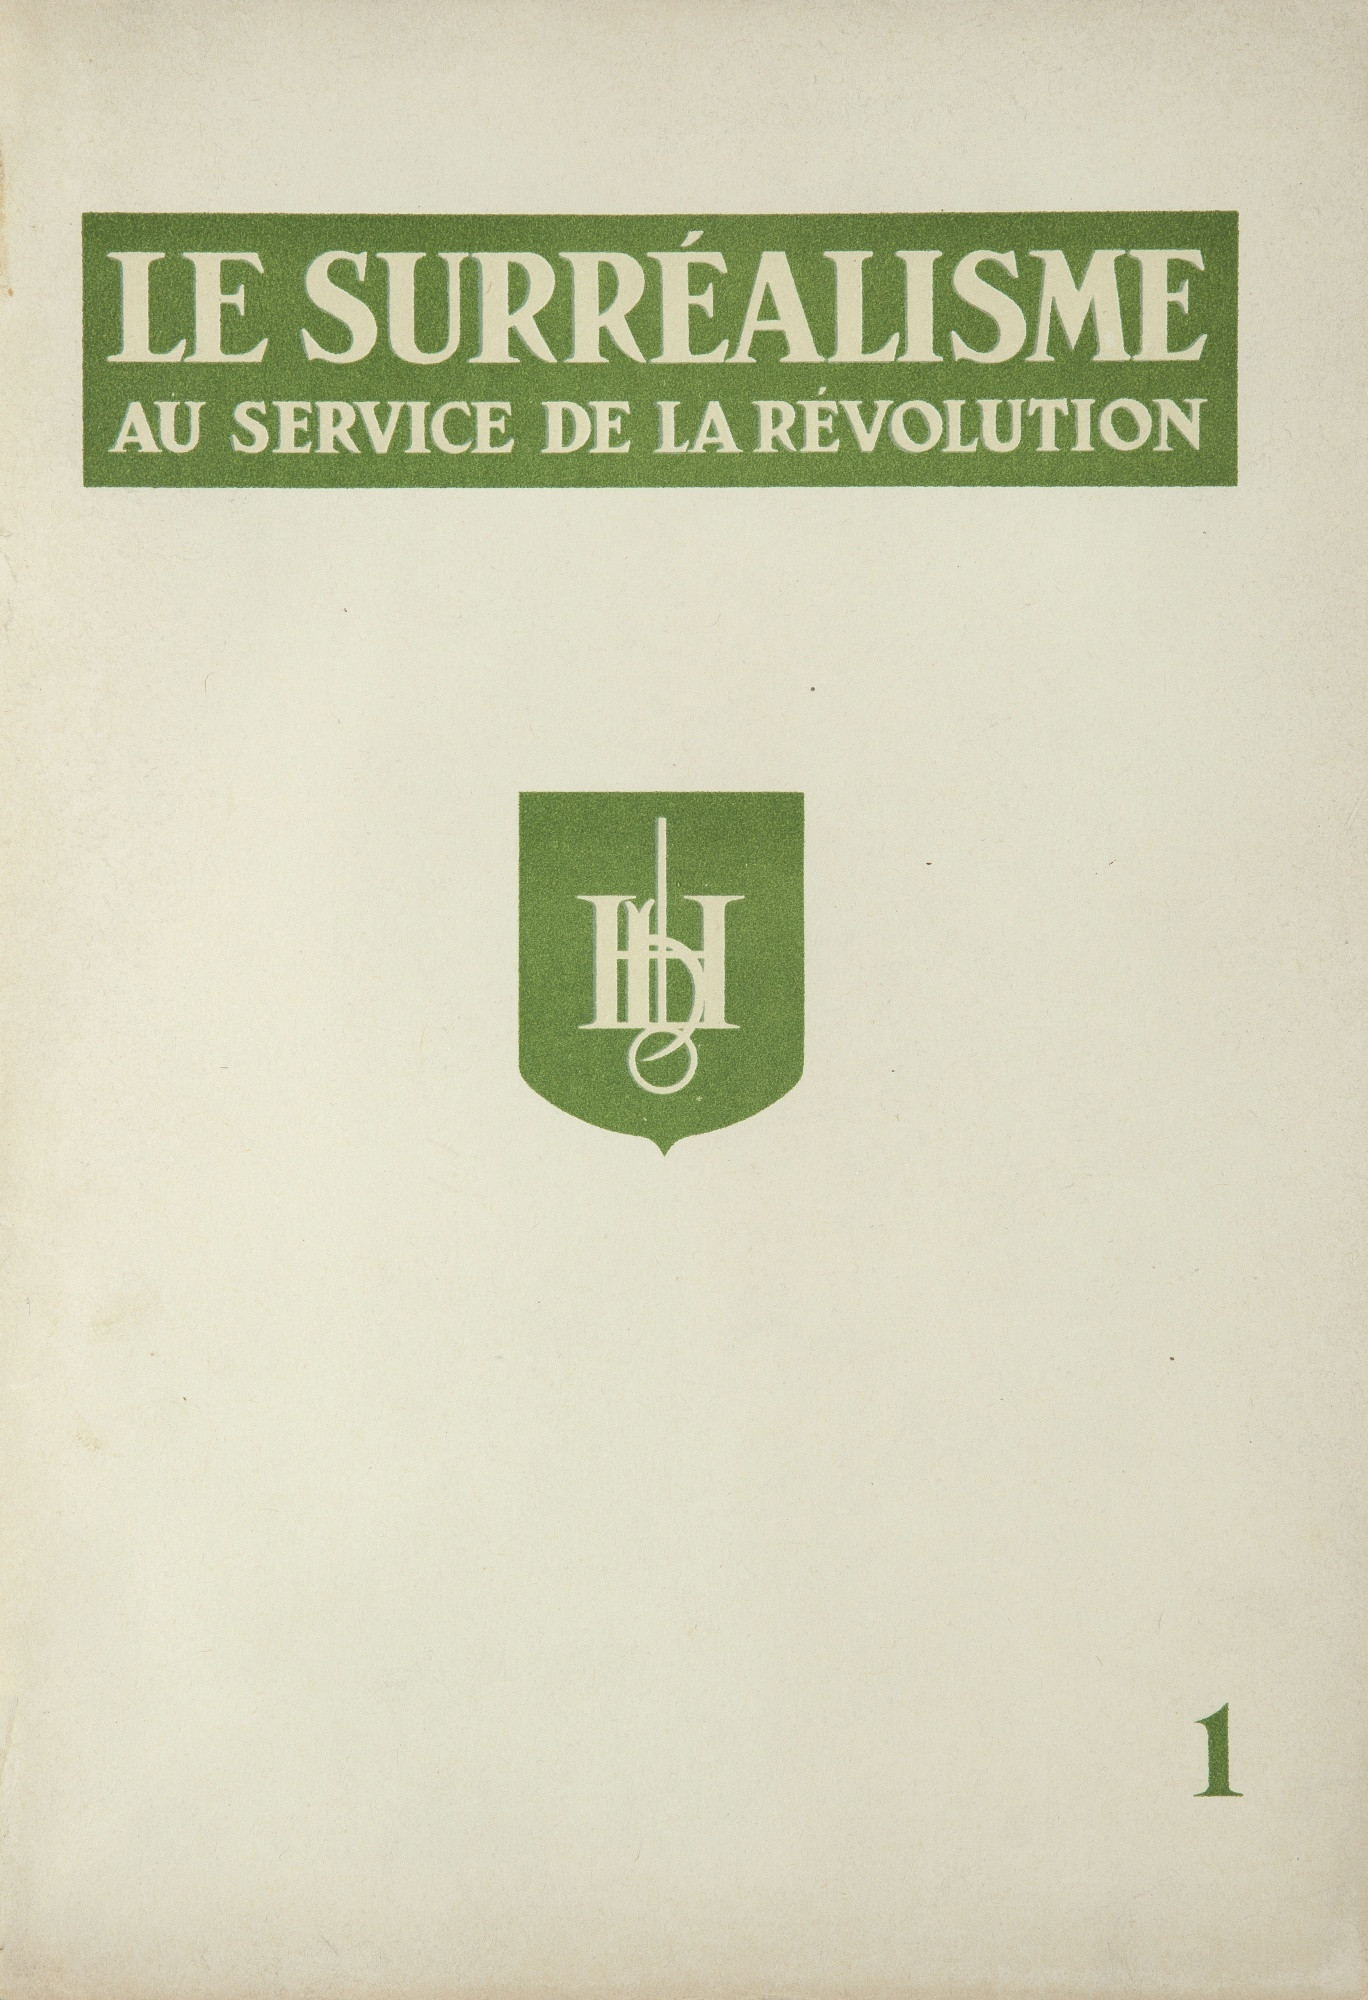 André Breton, editor. Le Surréalisme au service de la révolution 1, 1930